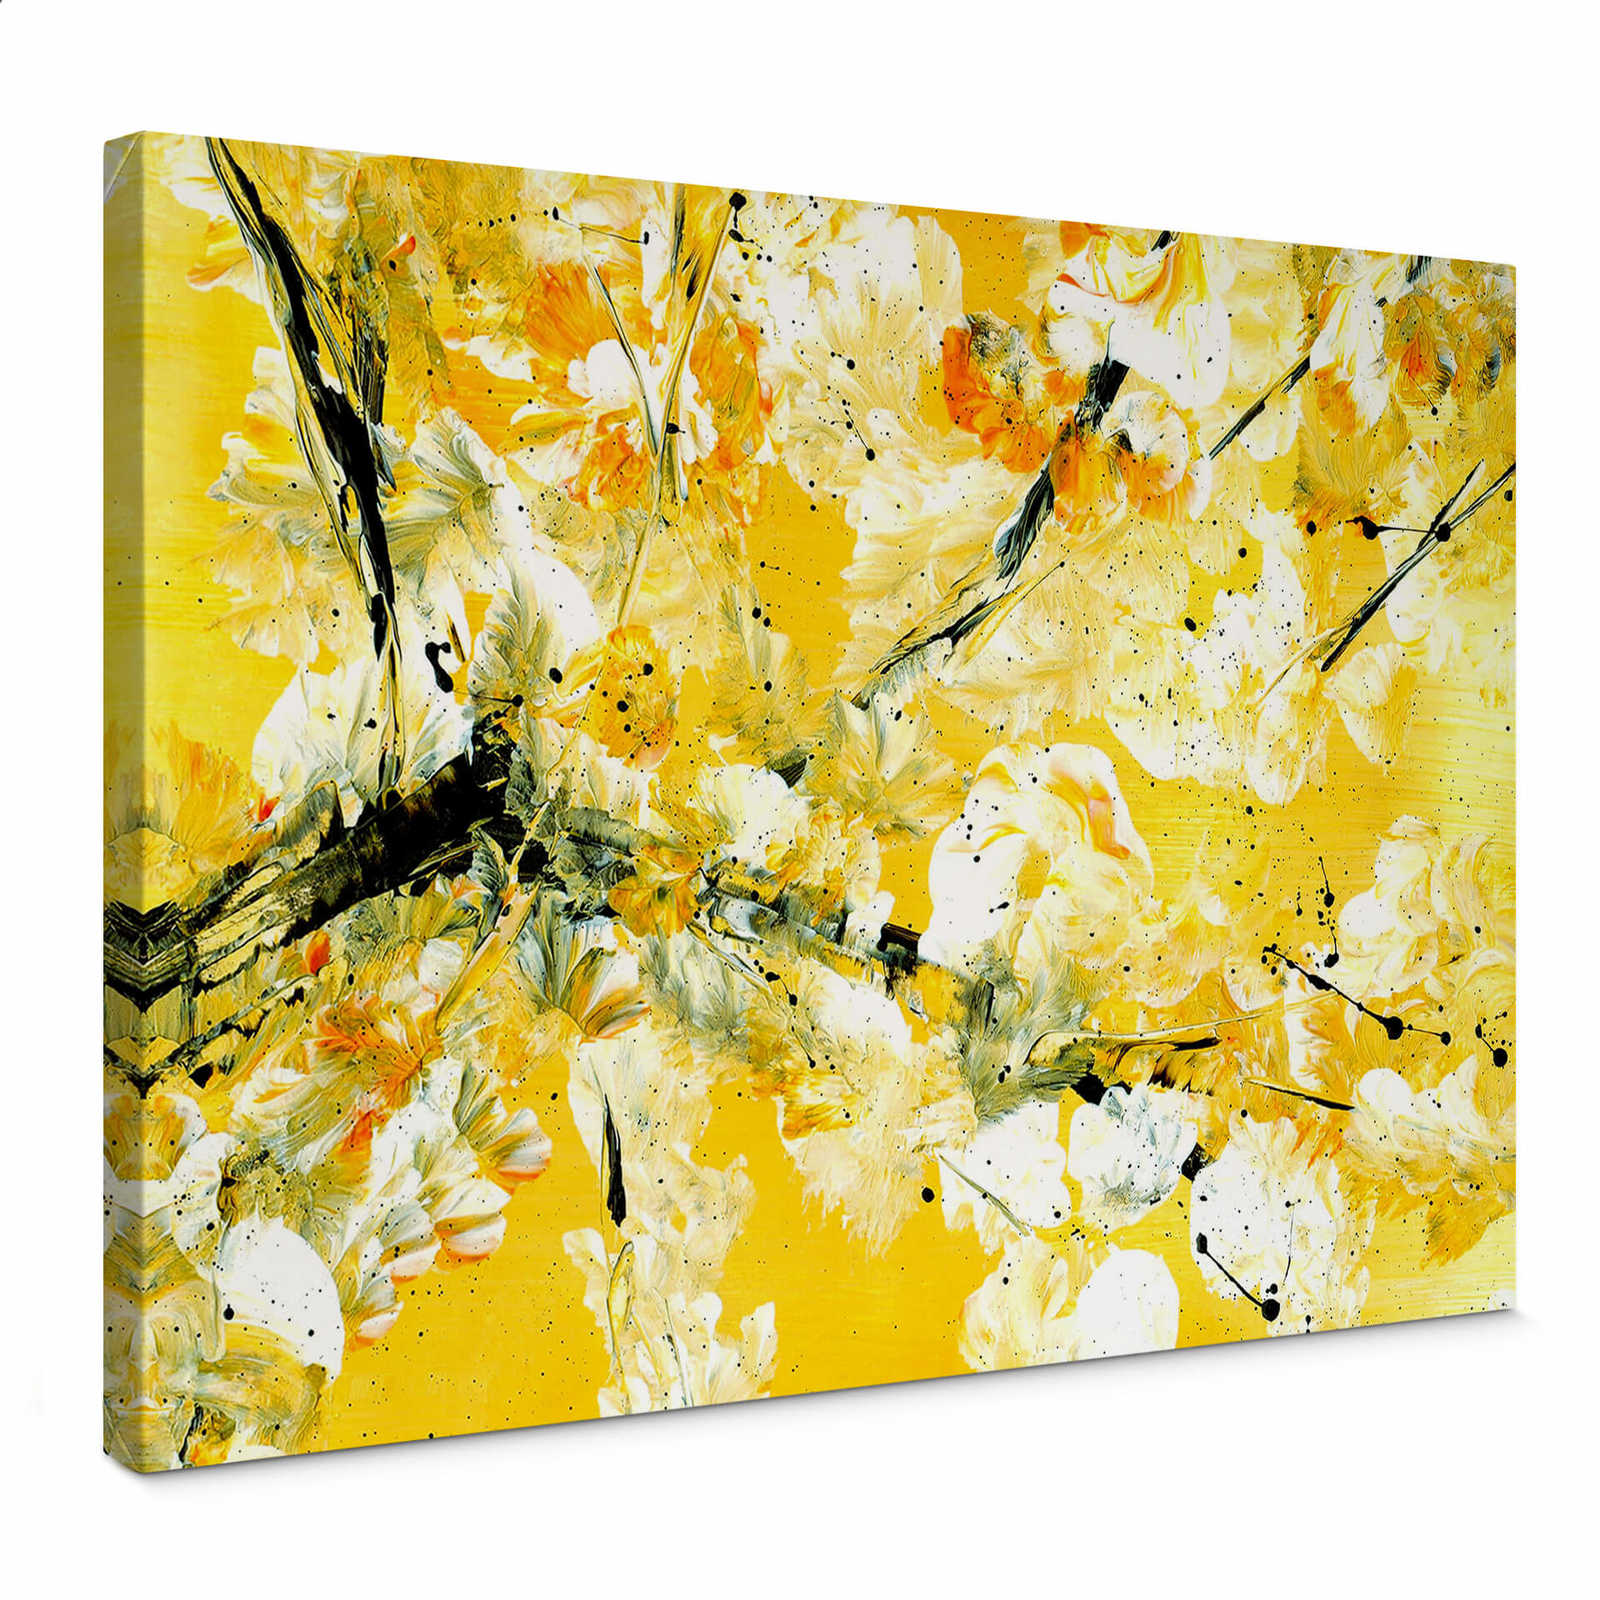 Niksic Canvas schilderij abstract schilderij - 0.70 m x 0.50 m
